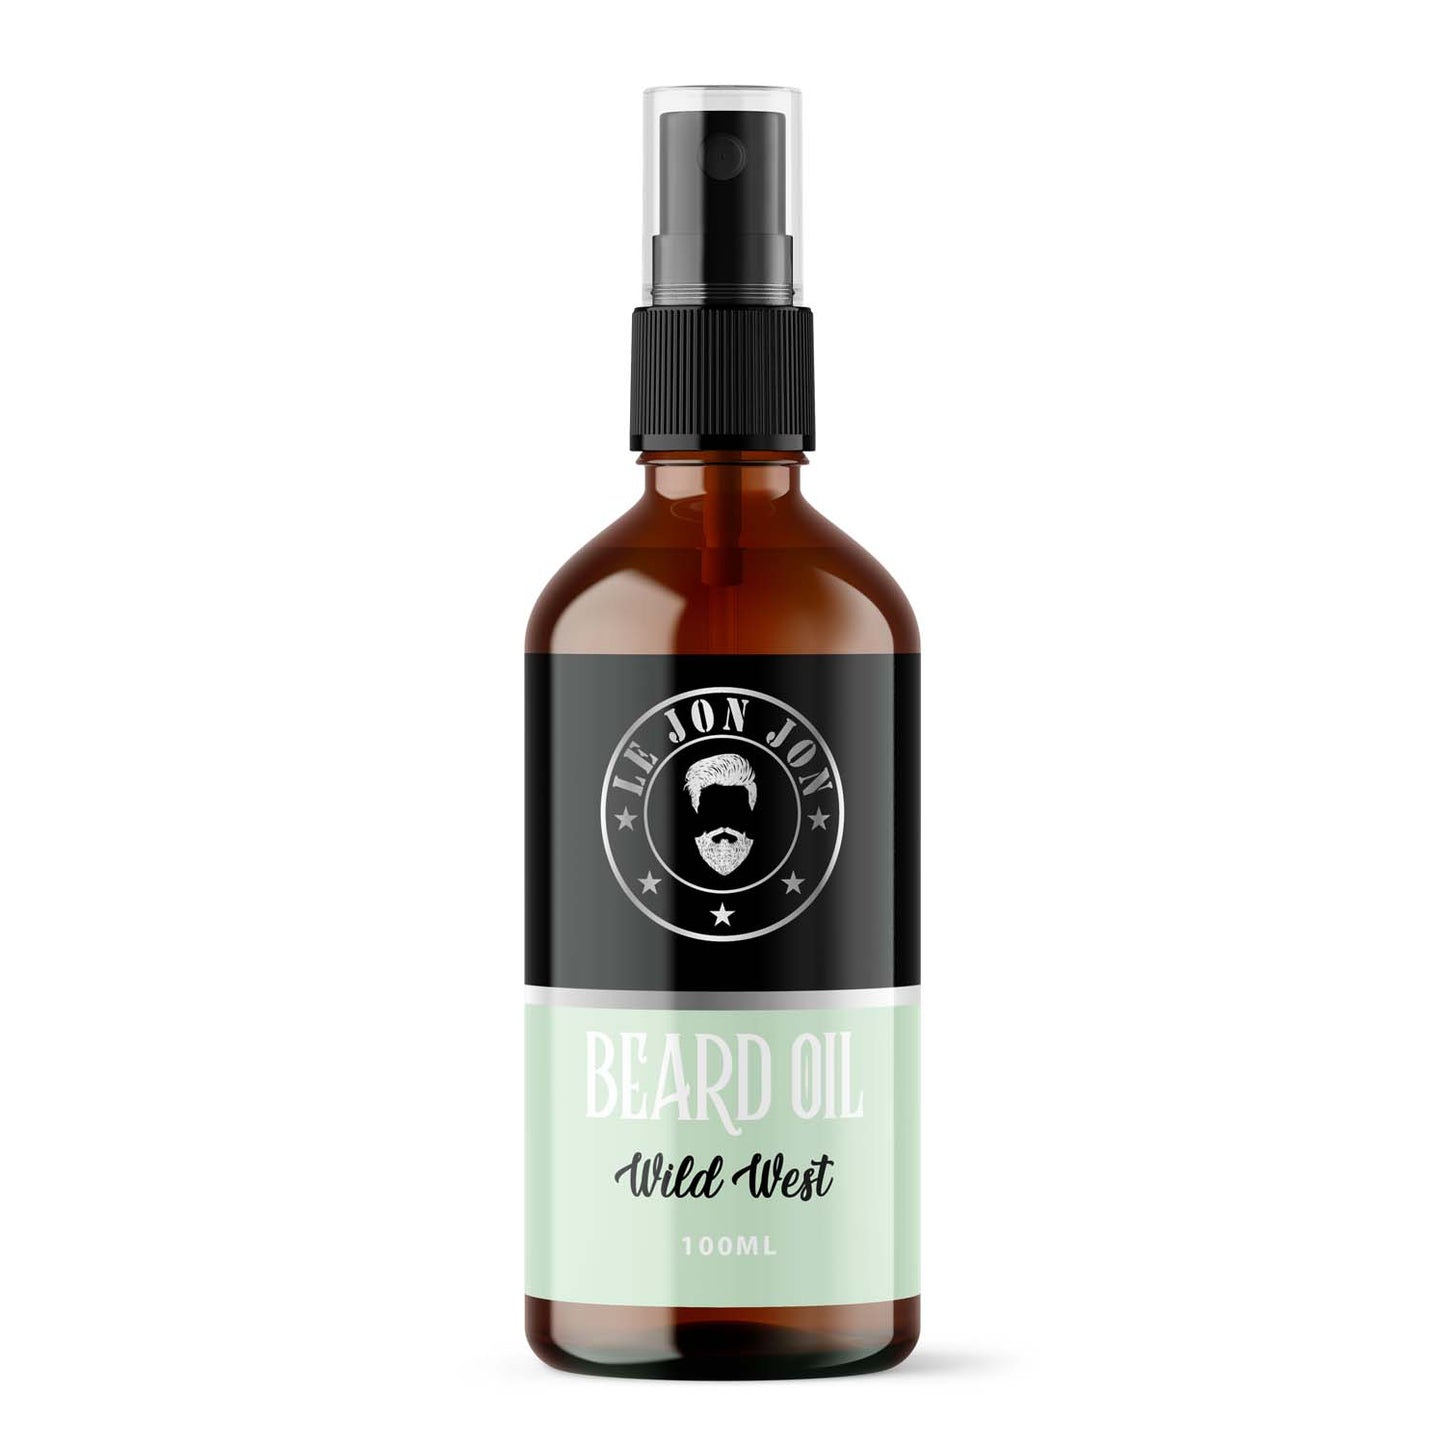 Wildwest 100ml bottle of beard oil